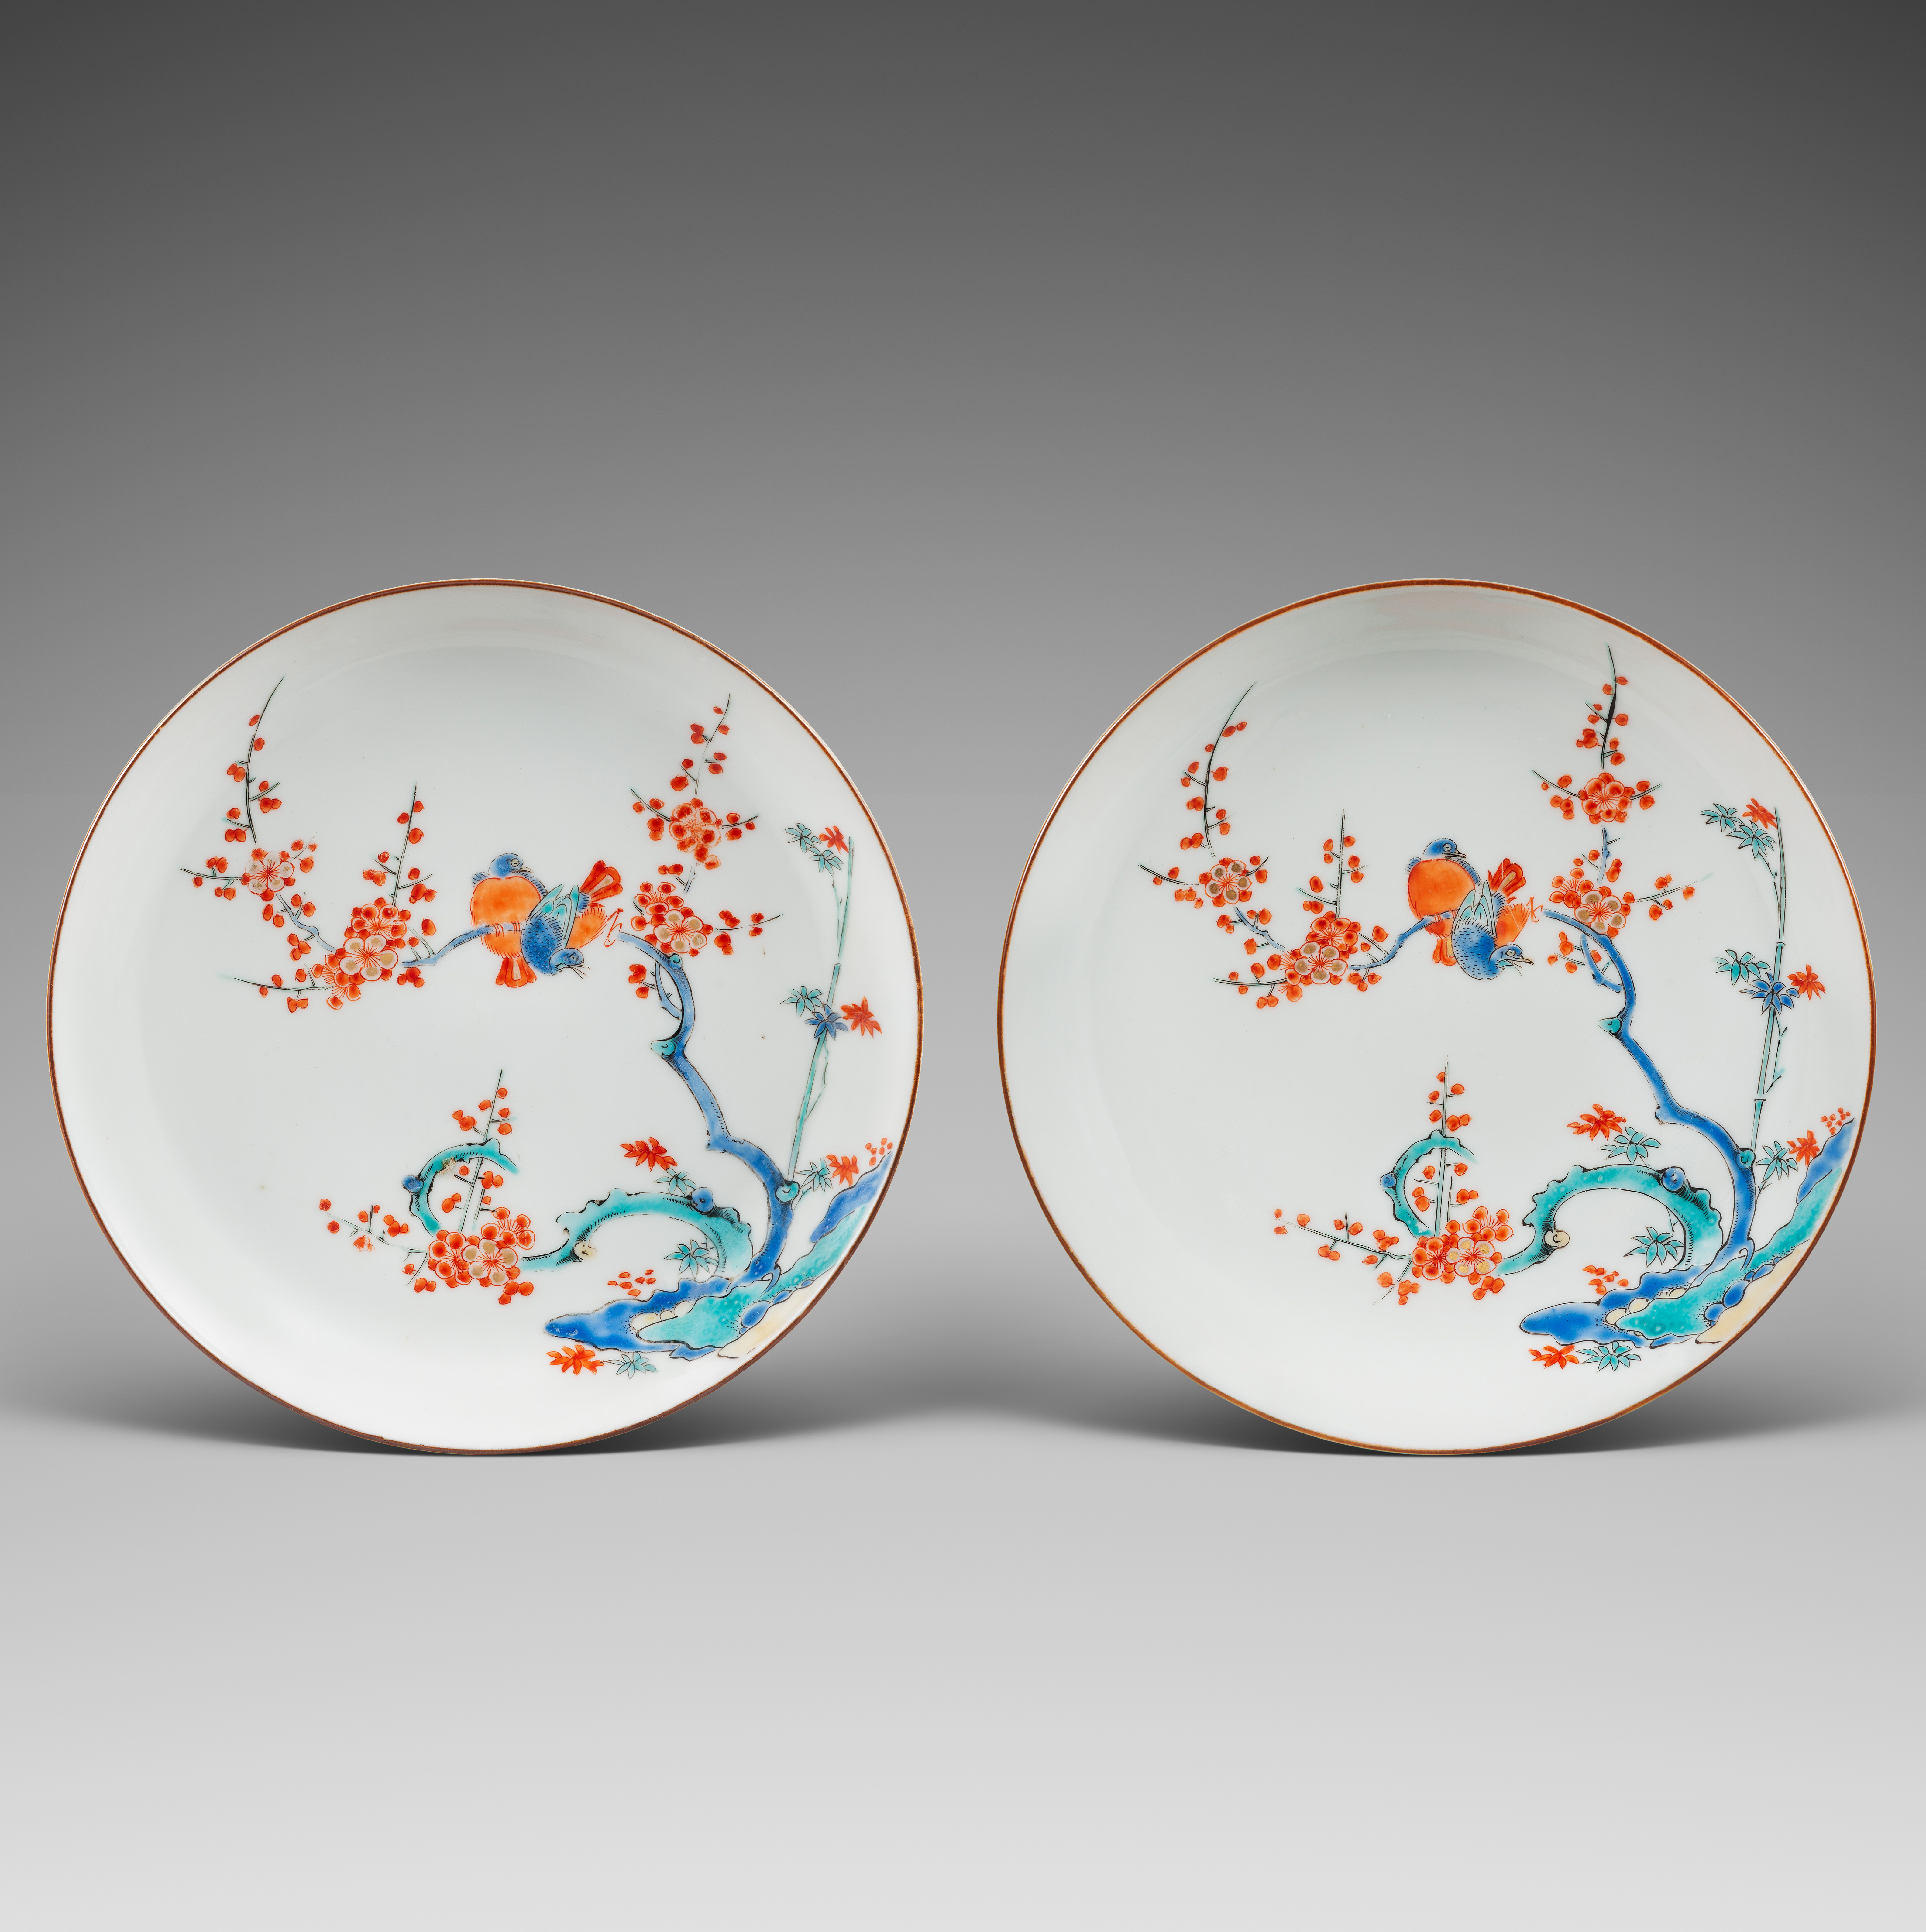 Porcelaine Epoque Edo (1603-1867), ca. 1670/1700, Japon, Arita